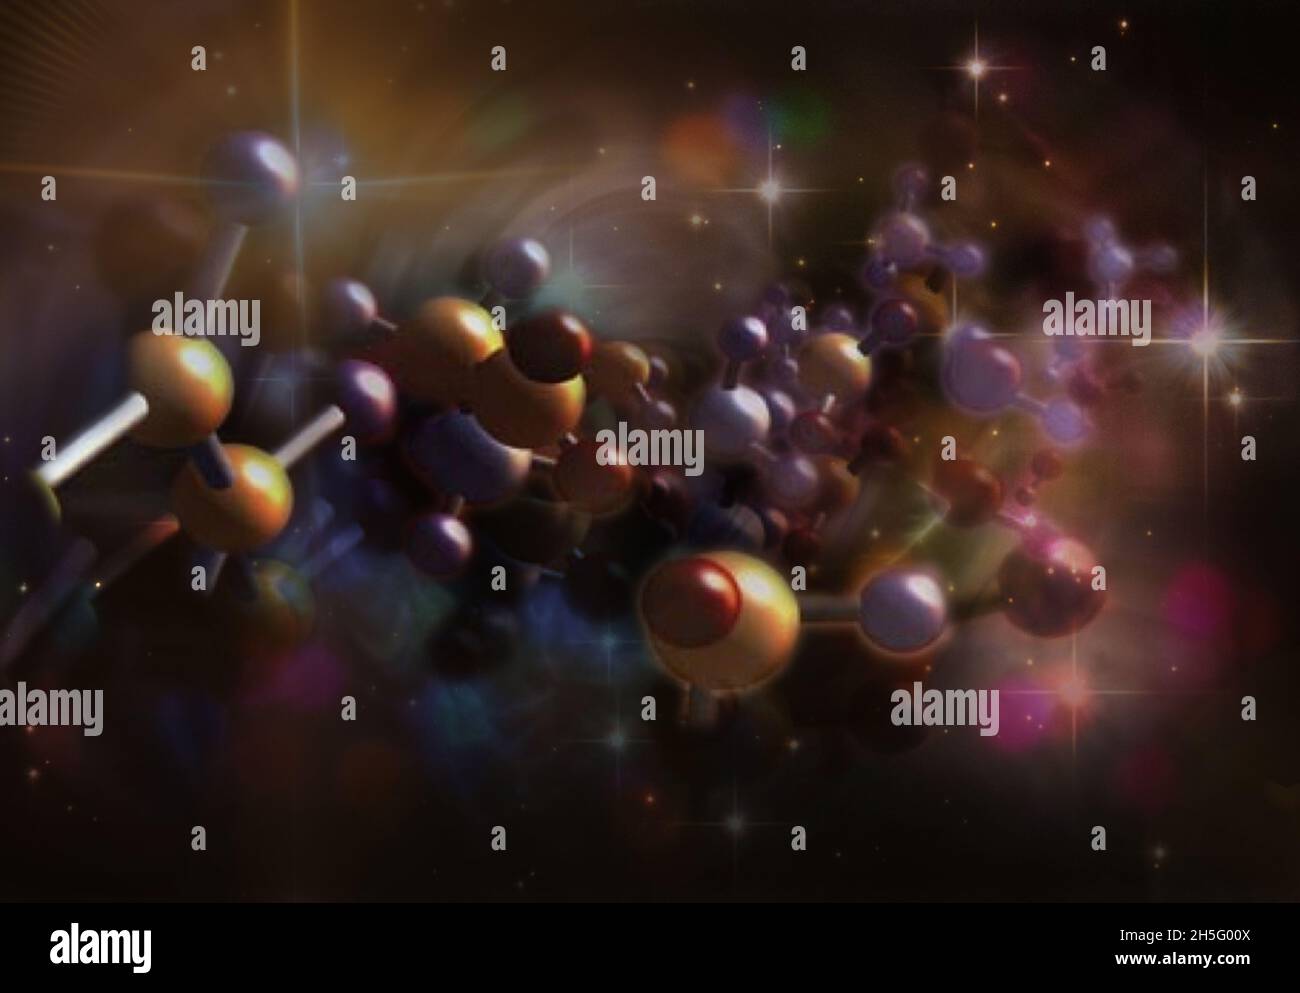 Moleküle im Weltraum. Theorie des Ursprungs des Lebens. Elemente dieses Bildes, die von der NASA eingerichtet wurden. Stockfoto